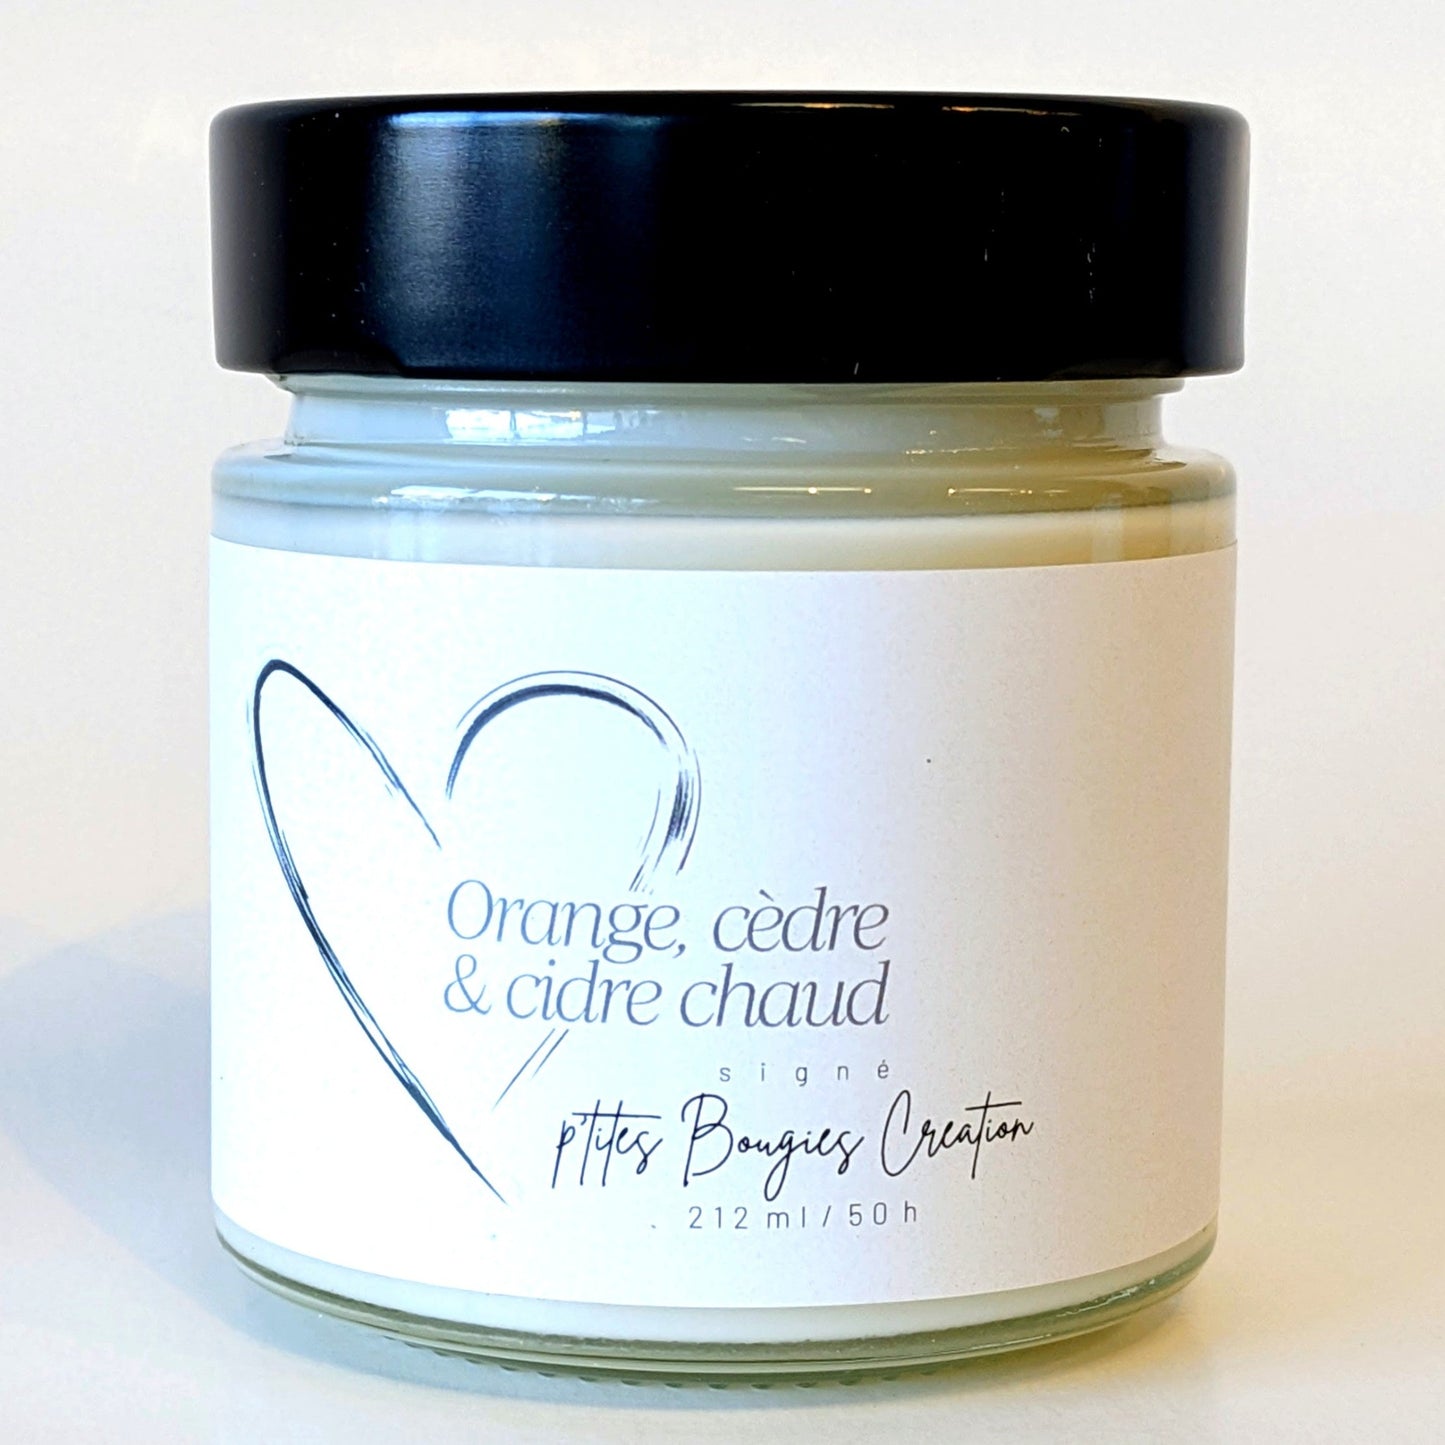 Bougie Orange, cèdre et cidre chaud - P'tites Bougies Création